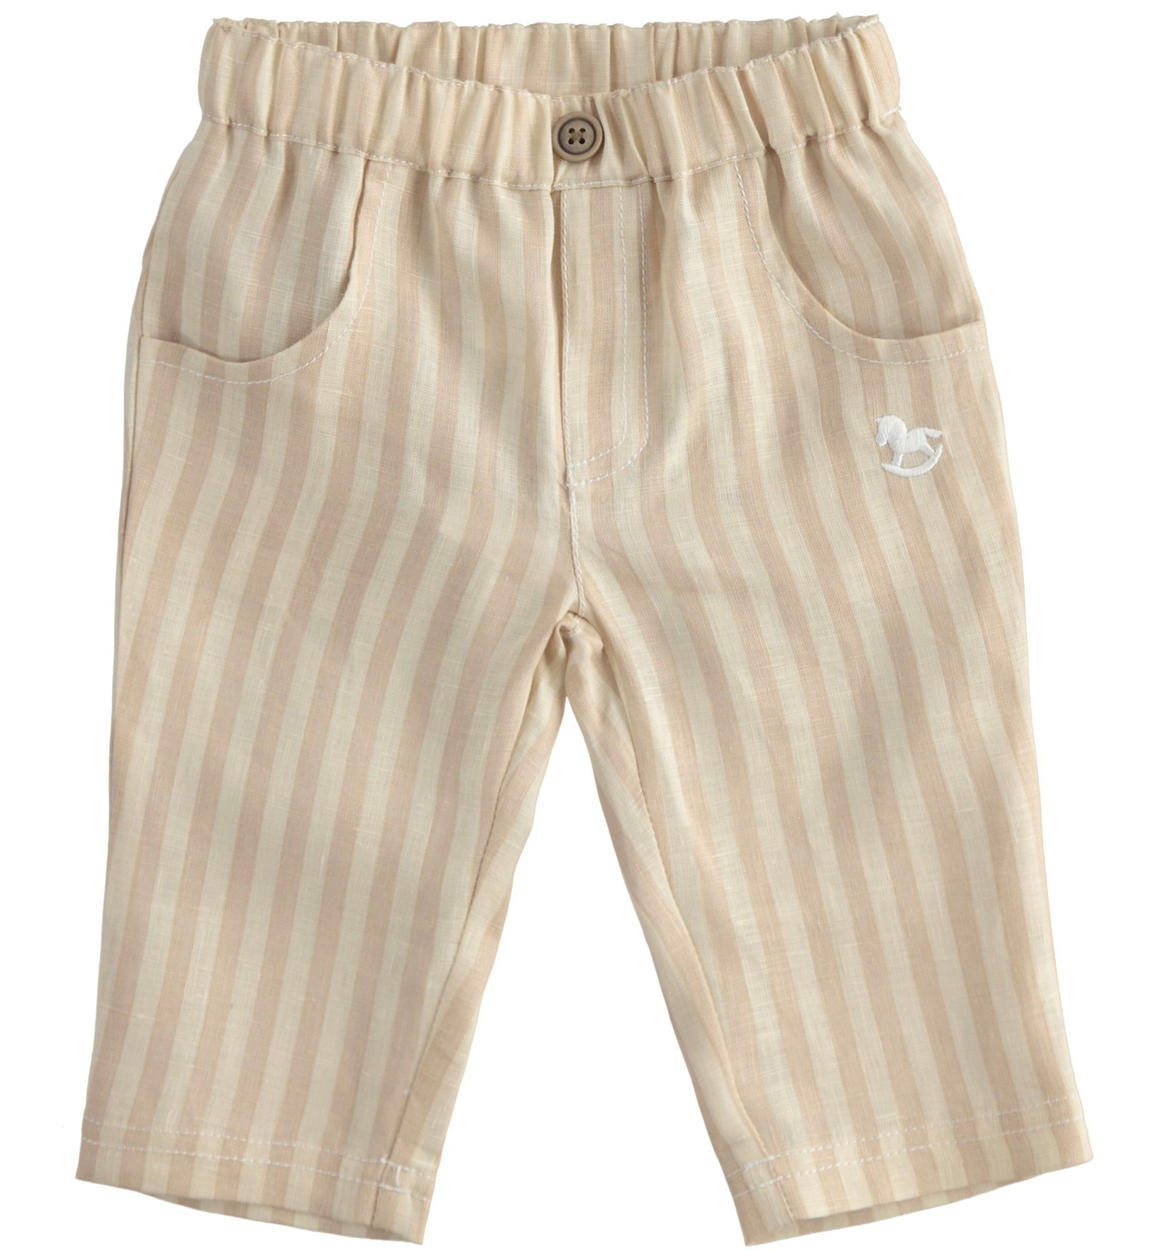 Elegante pantalone neonato in 100% lino BEIGE iDO